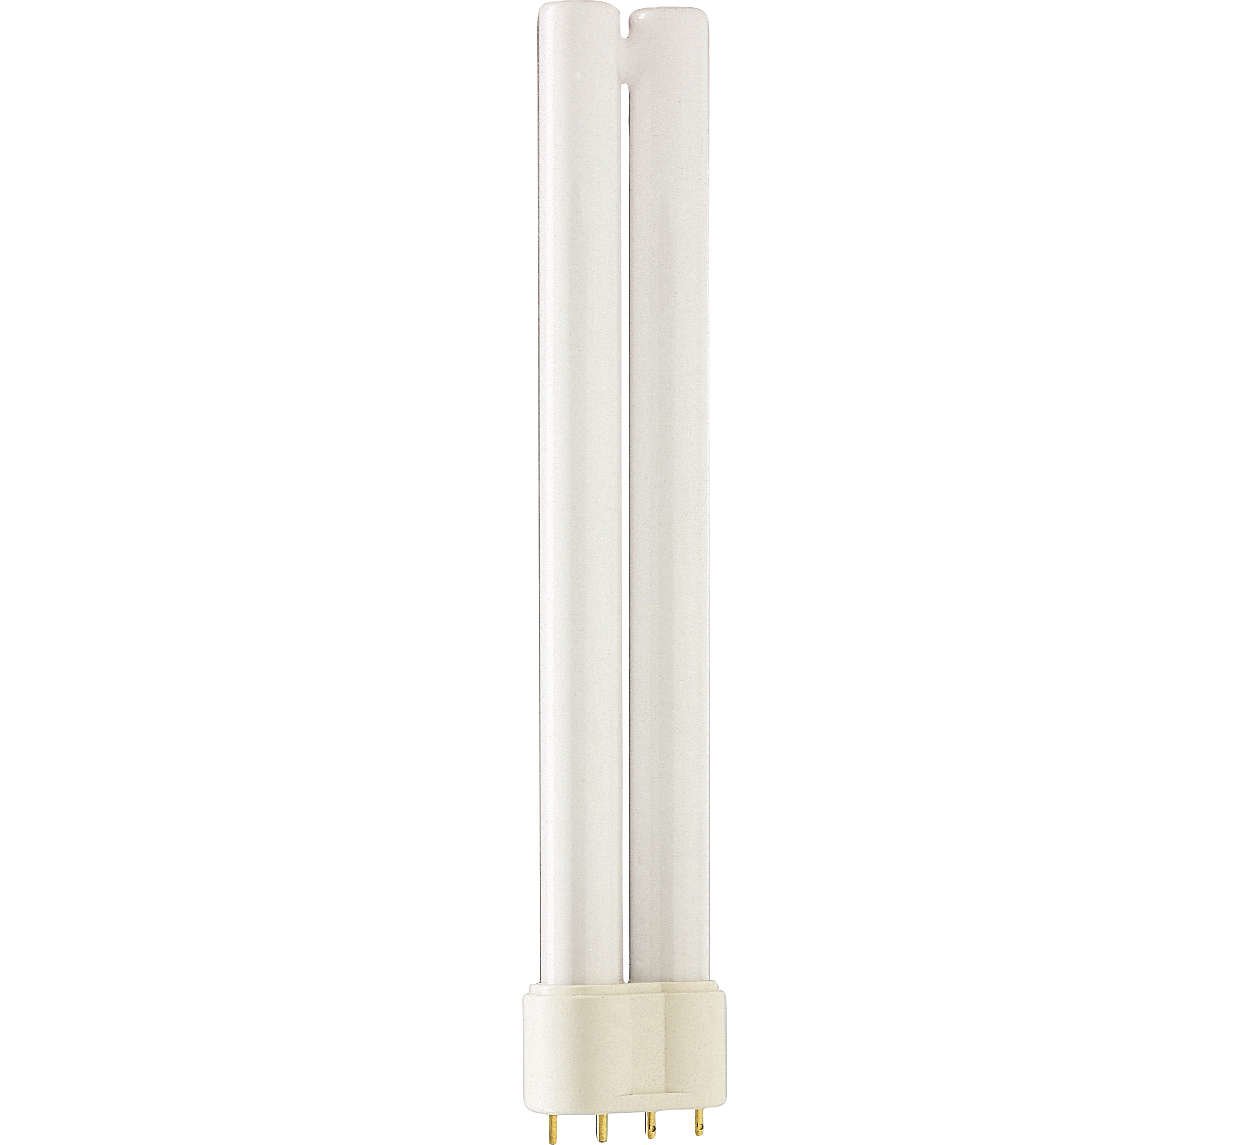 フィリップス コンパクト形蛍光ランプ(蛍光灯) MASTER PL-L 18W 4000K(白色) 2G11口金(4本ピン) MASTER PL-L